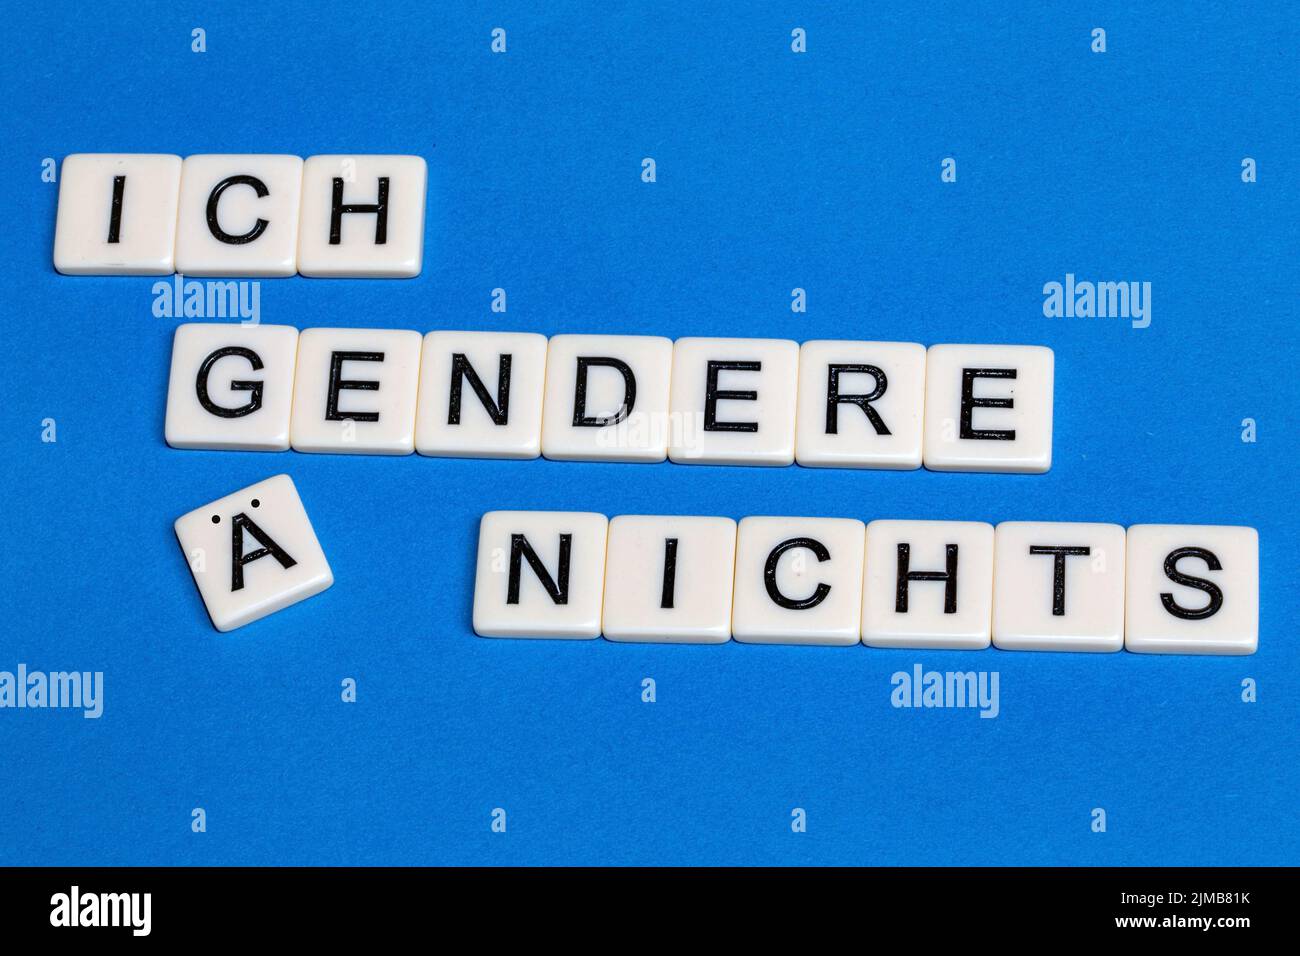 Symbolbild Kritik am Gendern: Buchstabenwürfel zeigen die Aussage ICH gendere nichts Banque D'Images